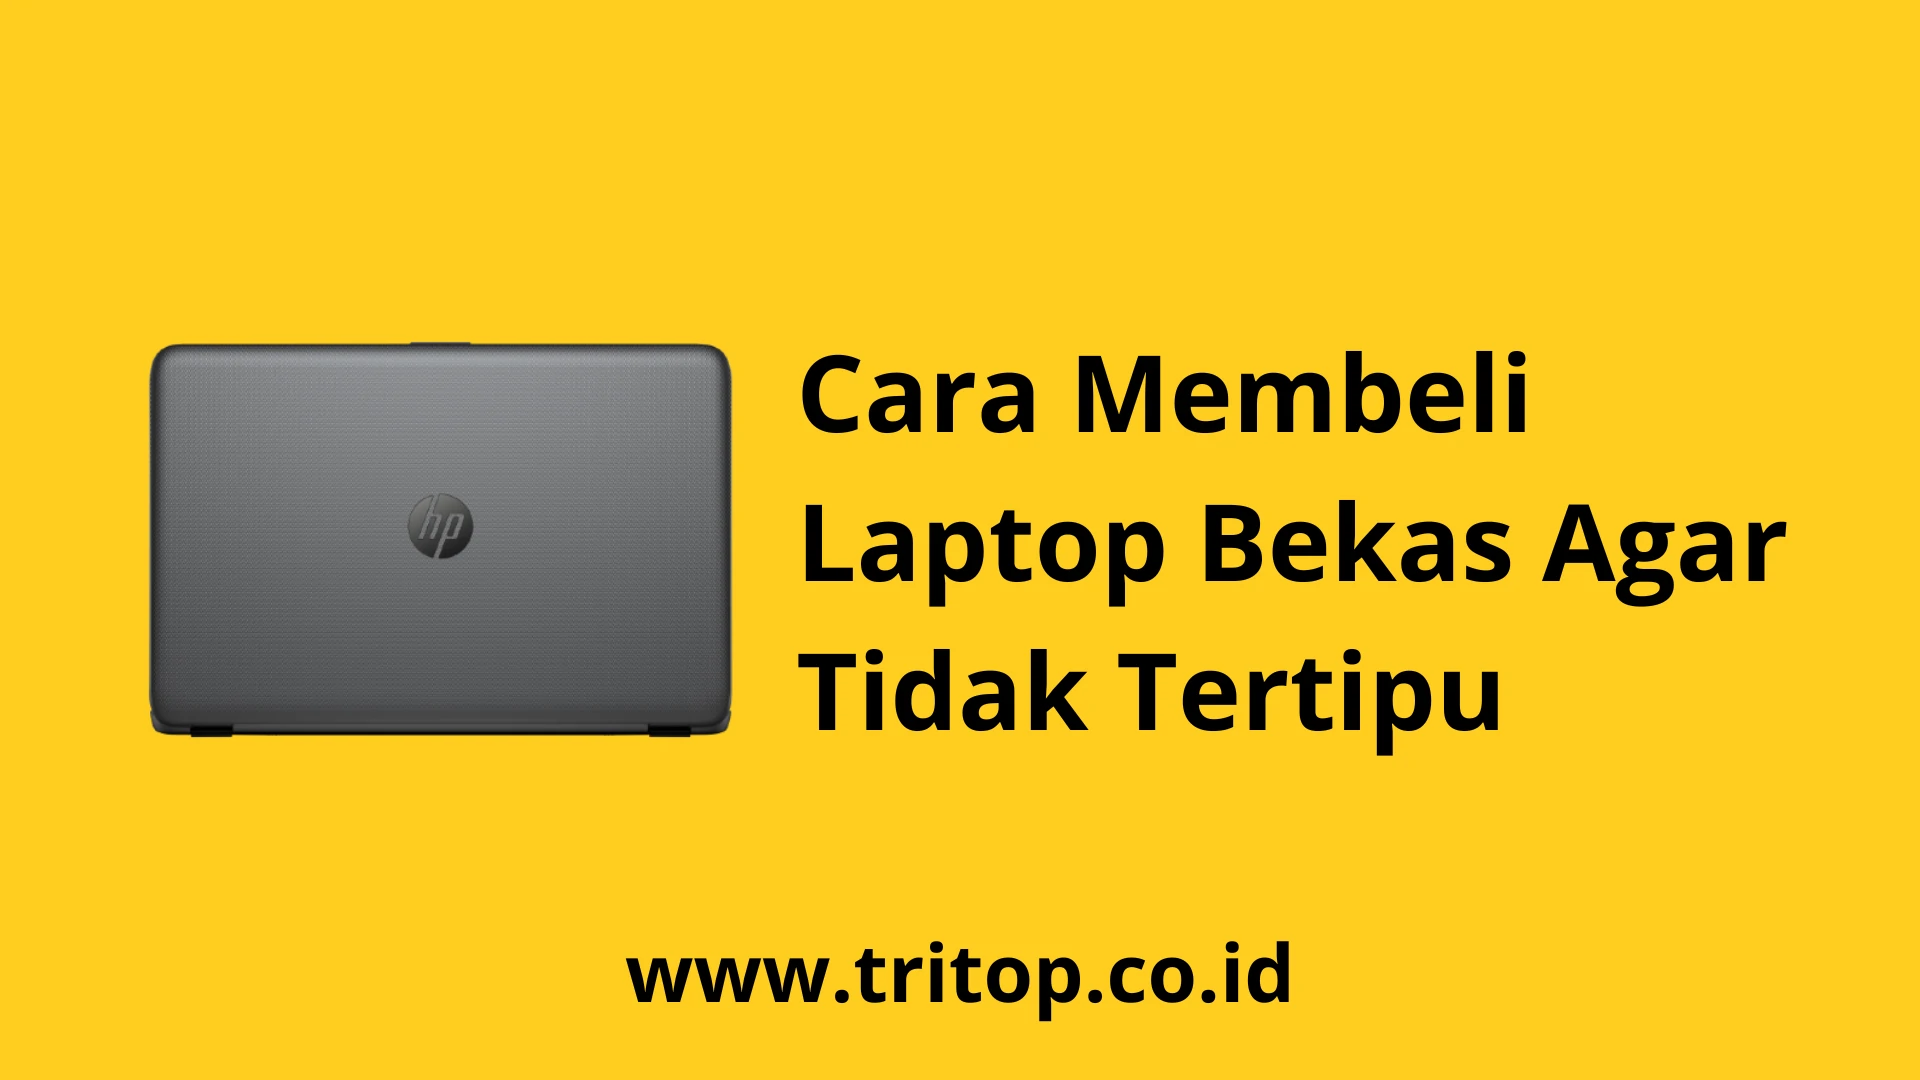 Cara Membeli Laptop Bekas Agar Tidak Tertipu www.tritop.co.id